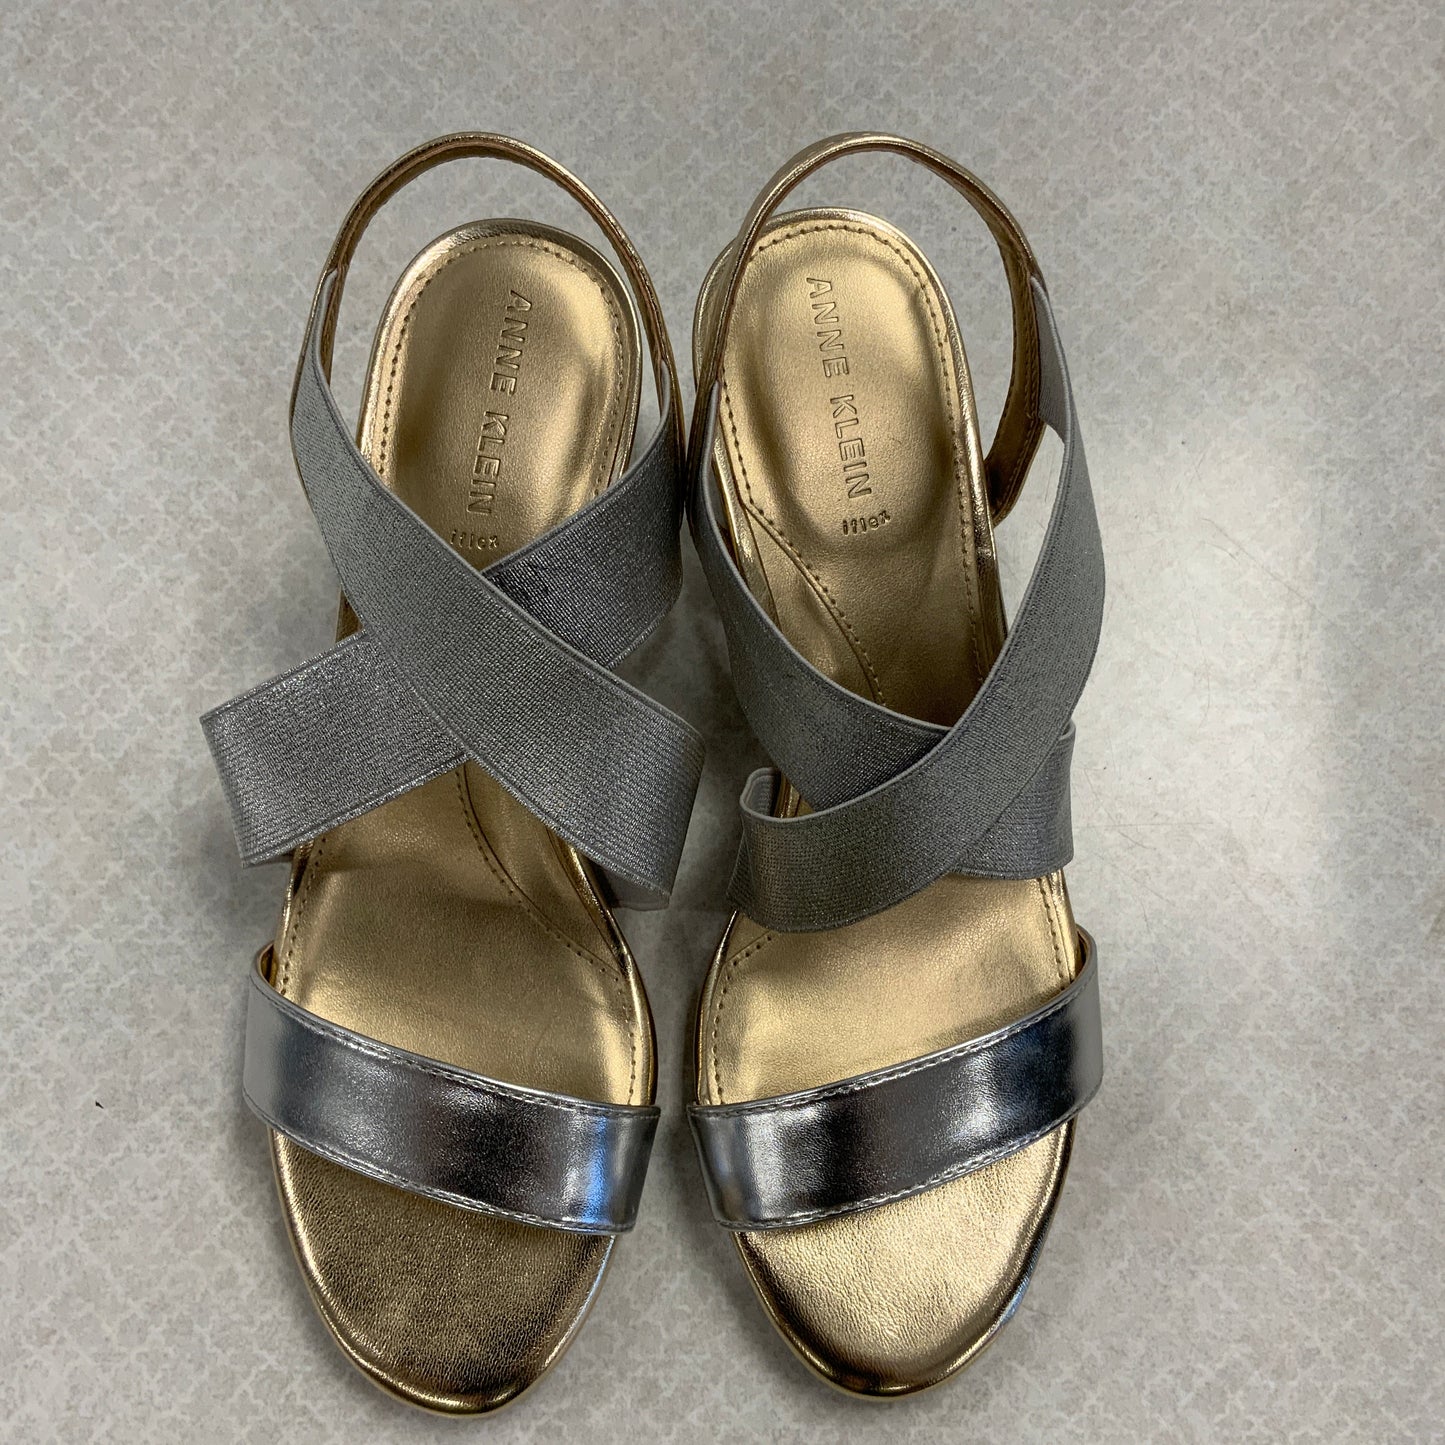 Gold & Silver Sandals Heels Block Anne Klein, Size 6.5